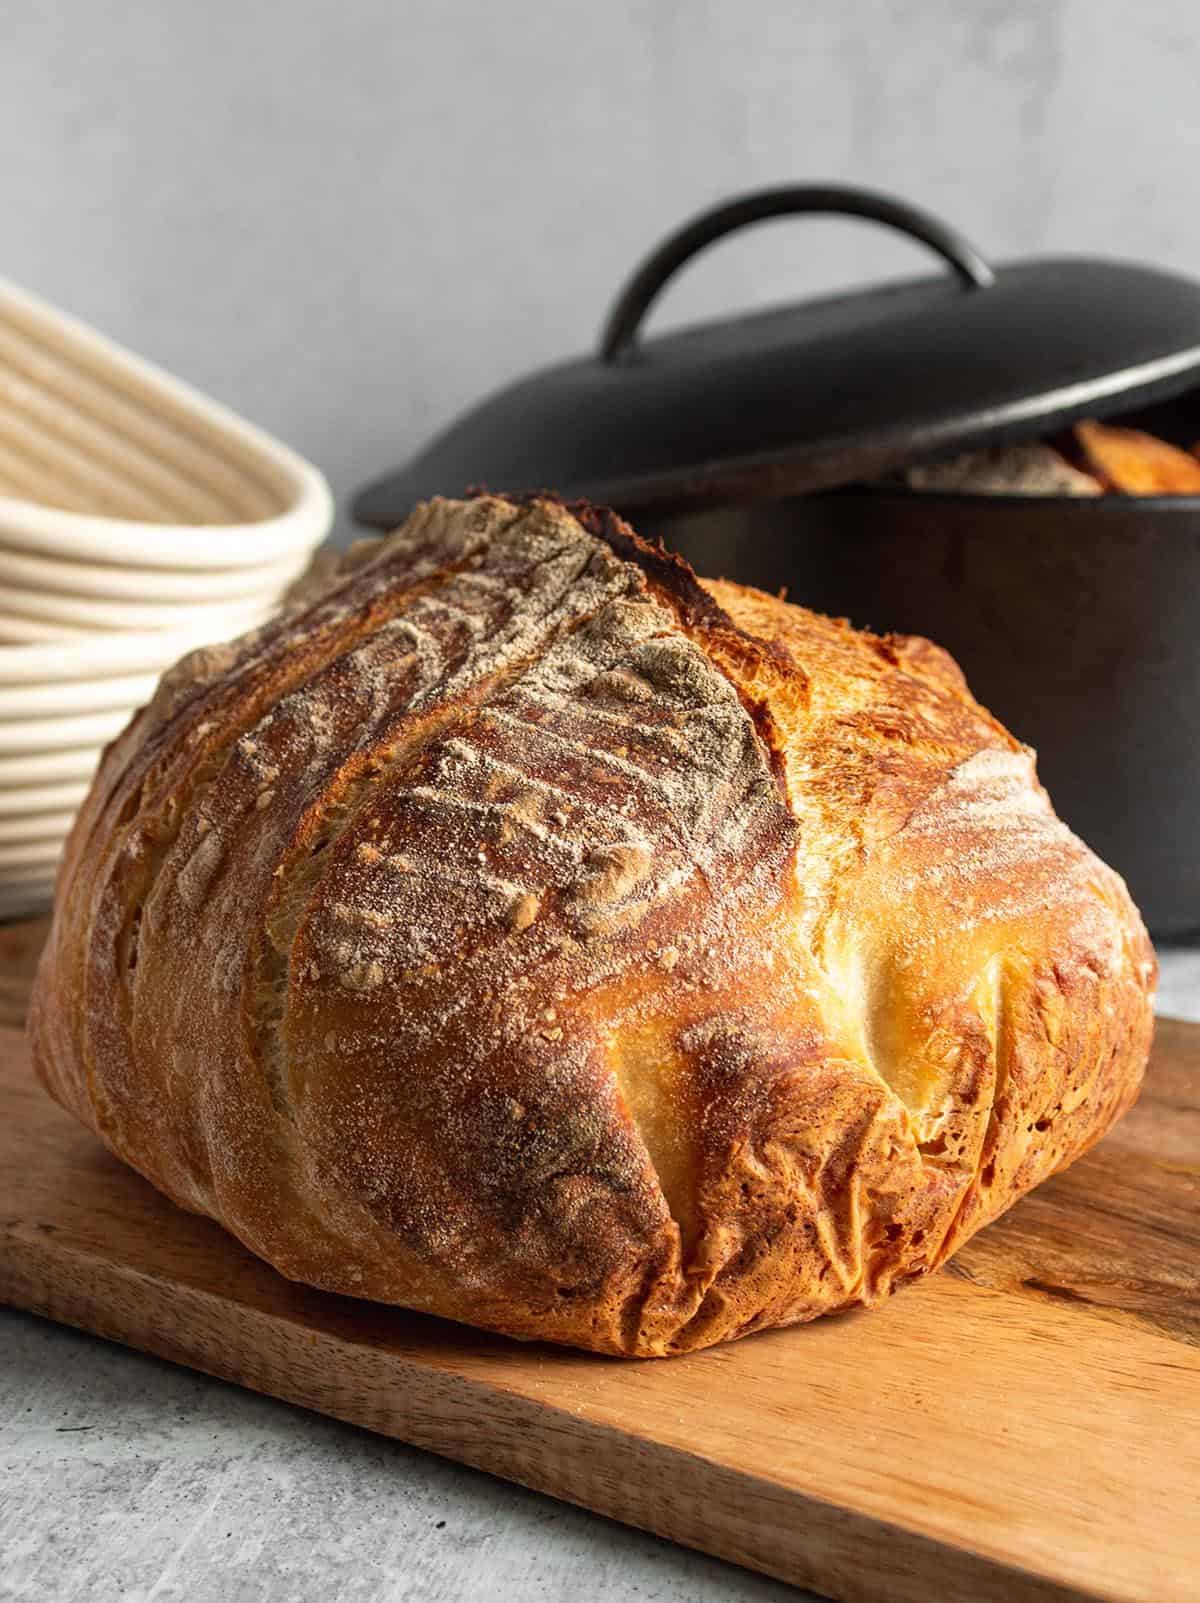 https://dirtanddough.com/wp-content/uploads/2022/03/Best_Dutch_Oven_For_Bread_7.jpg